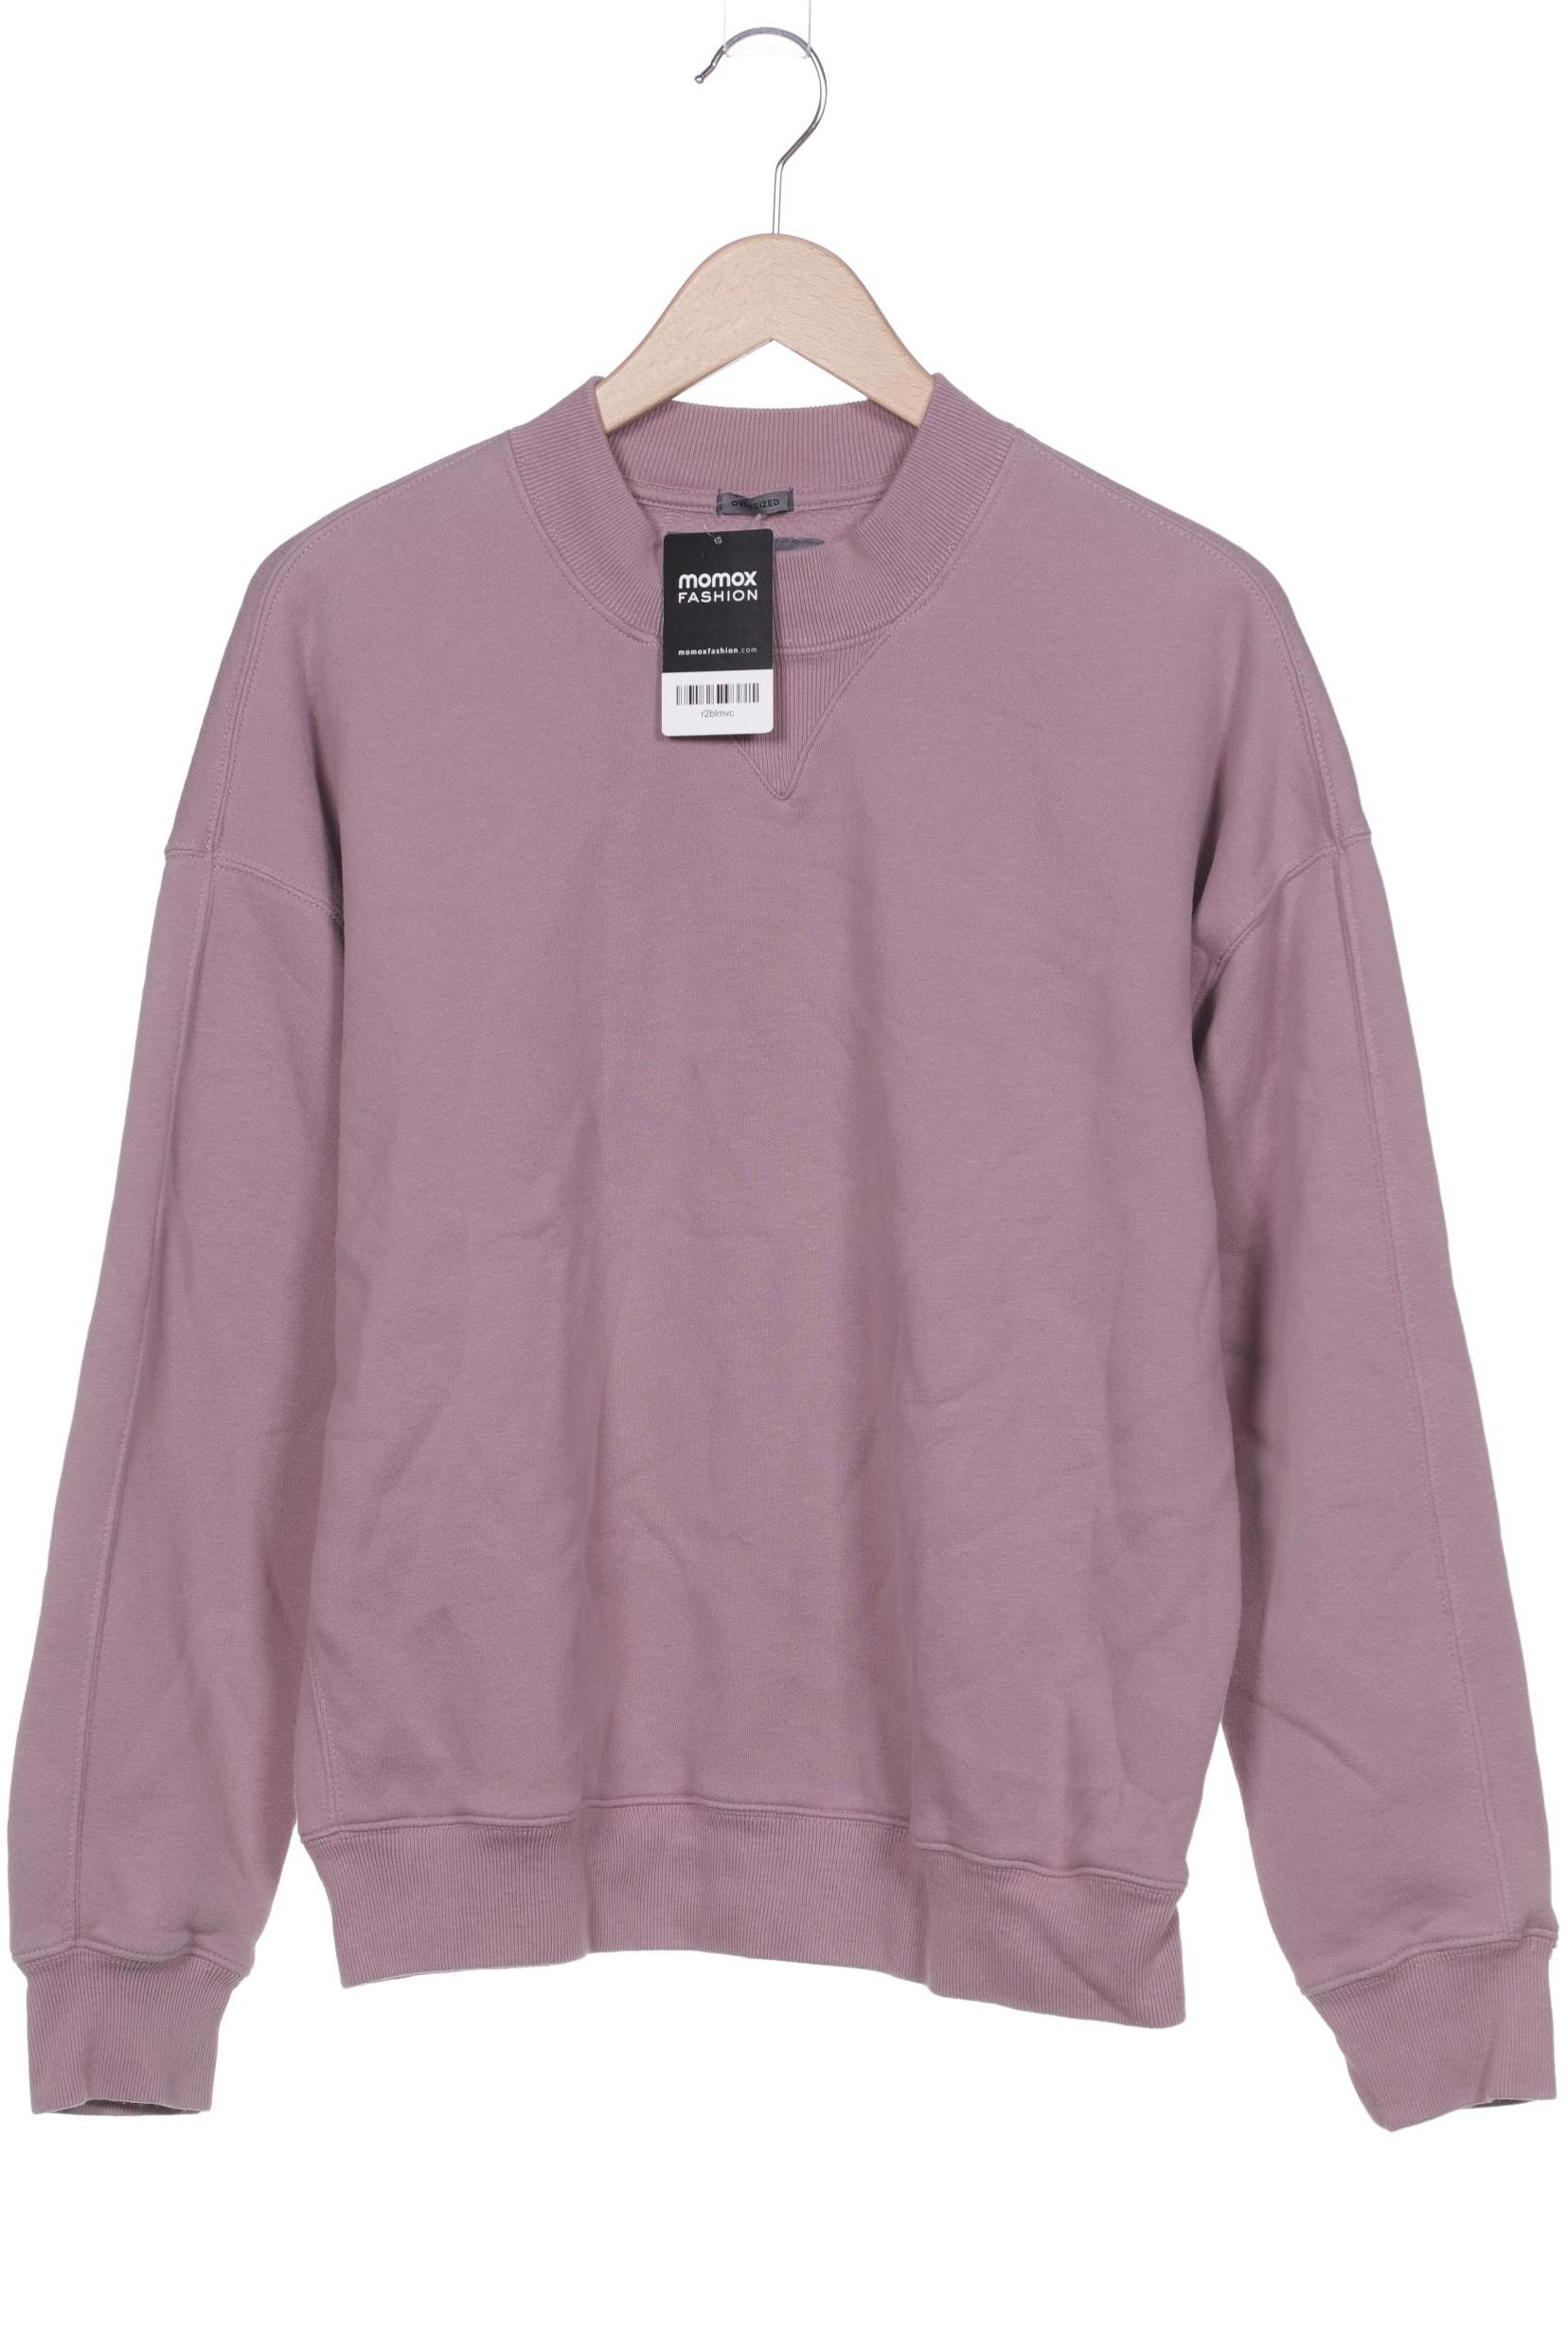 Abercrombie & Fitch Herren Sweatshirt, pink von Abercrombie & Fitch